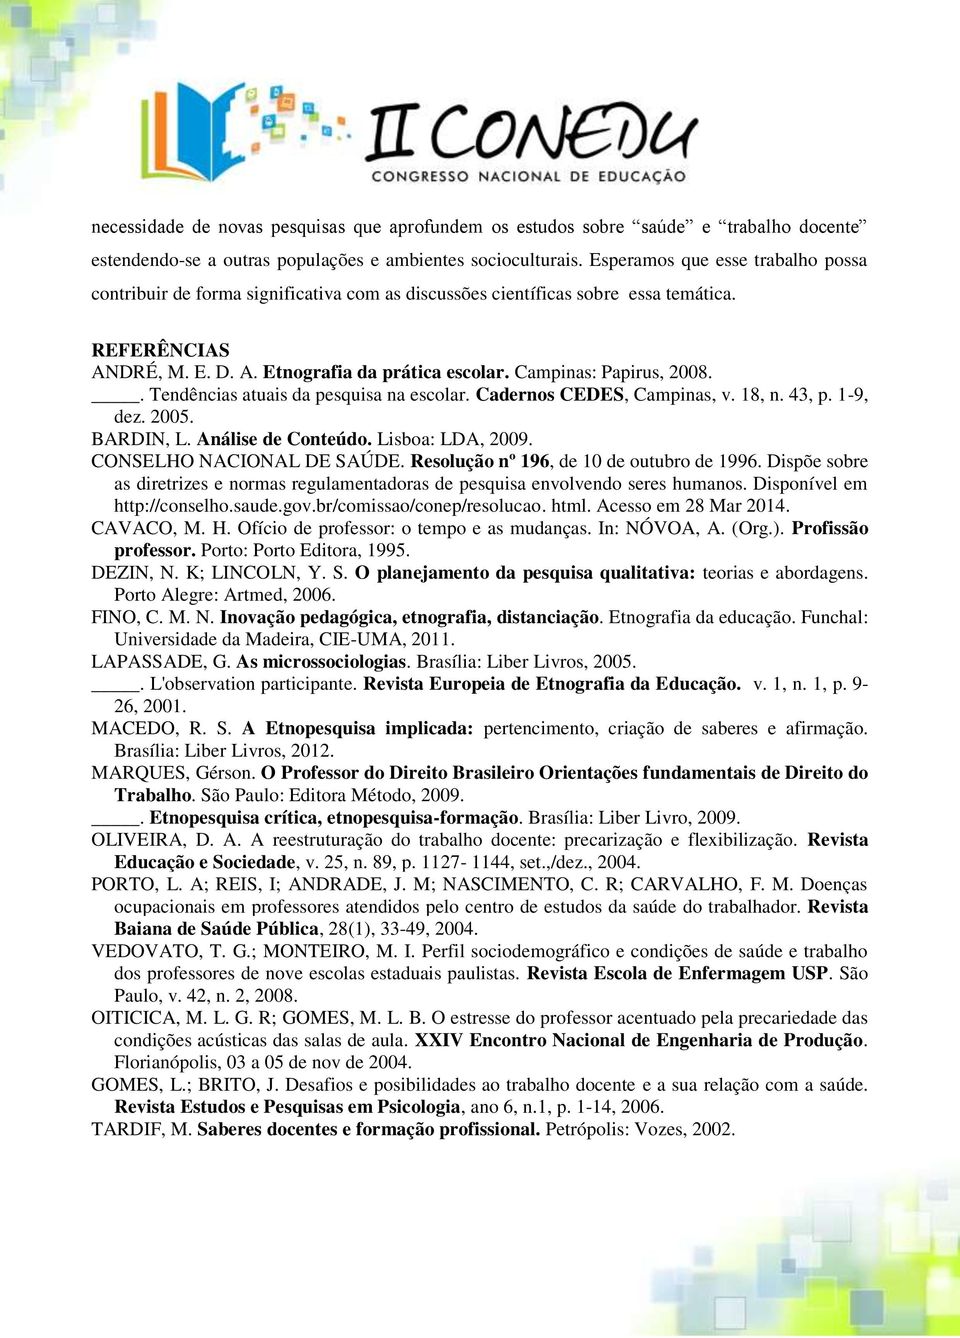 Campinas: Papirus, 2008.. Tendências atuais da pesquisa na escolar. Cadernos CEDES, Campinas, v. 18, n. 43, p. 1-9, dez. 2005. BARDIN, L. Análise de Conteúdo. Lisboa: LDA, 2009.